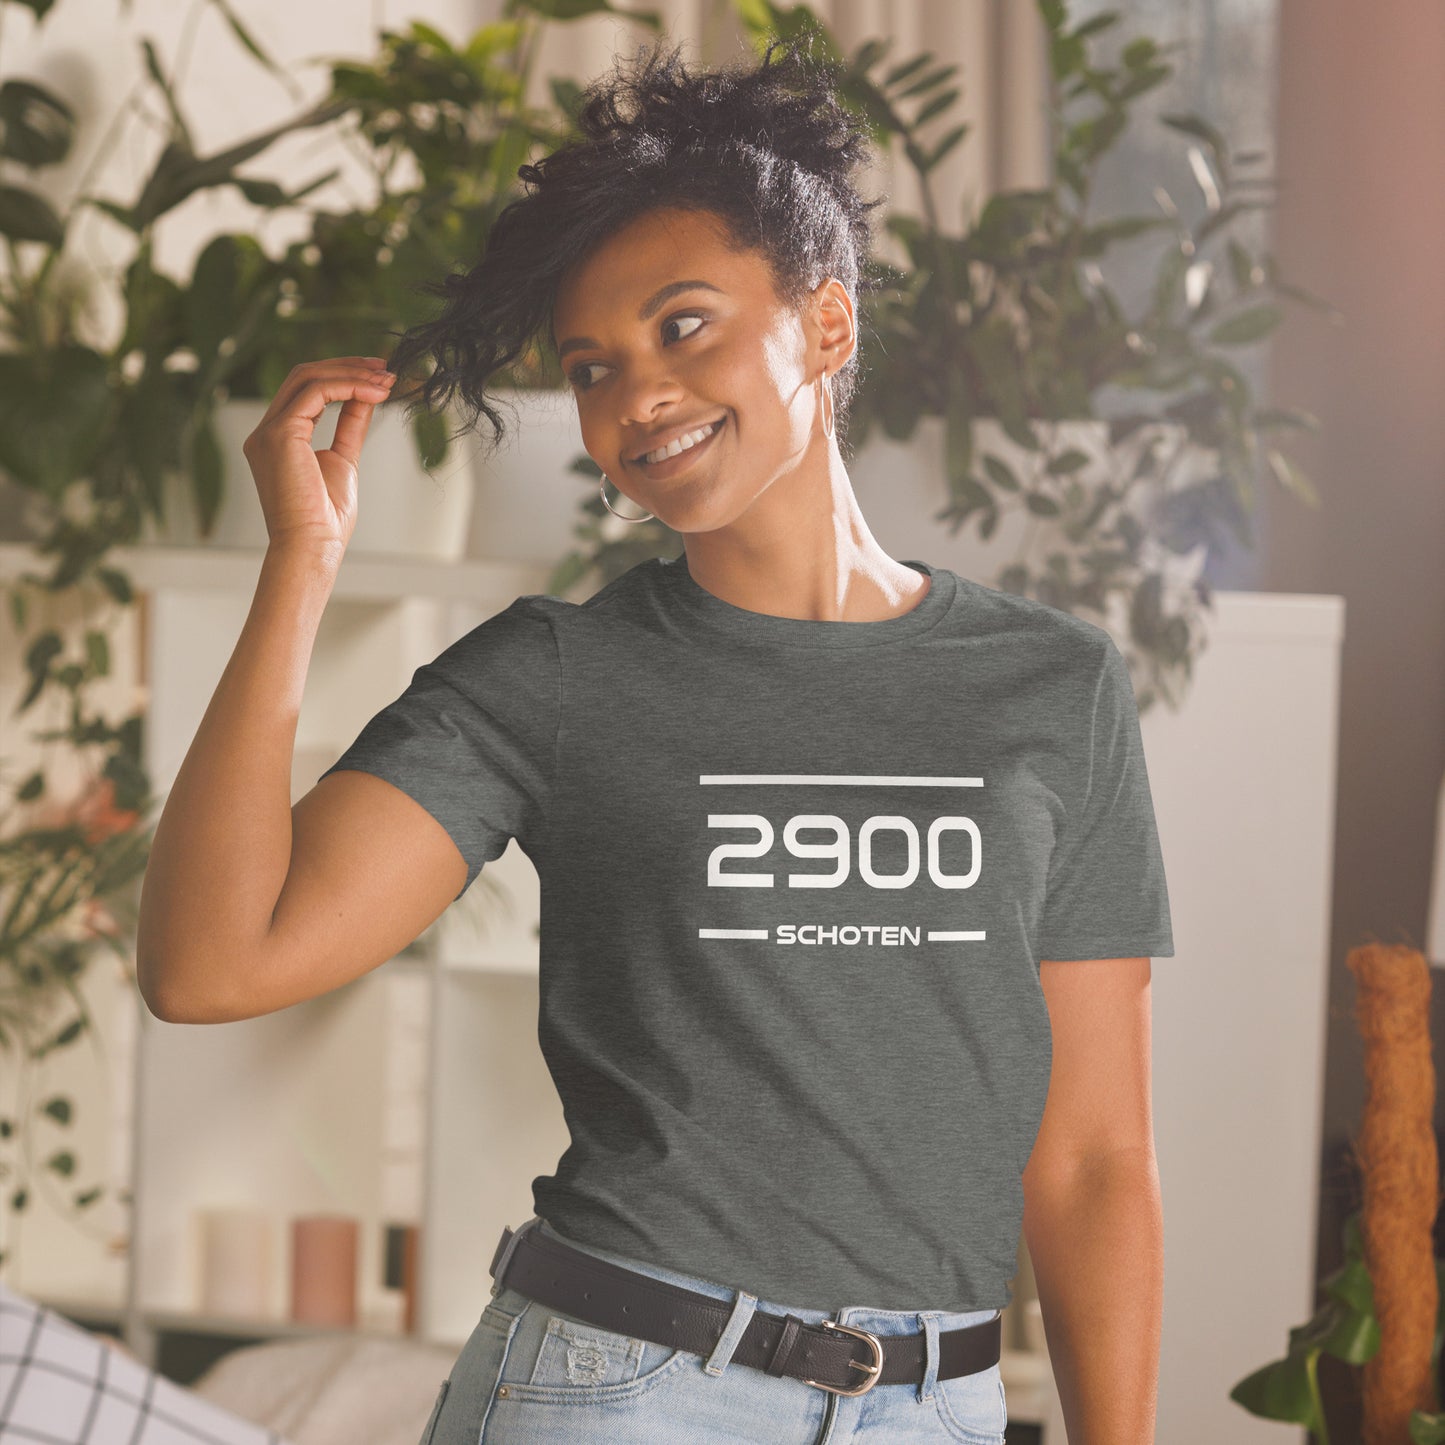 Tshirt - 2900 - Schoten